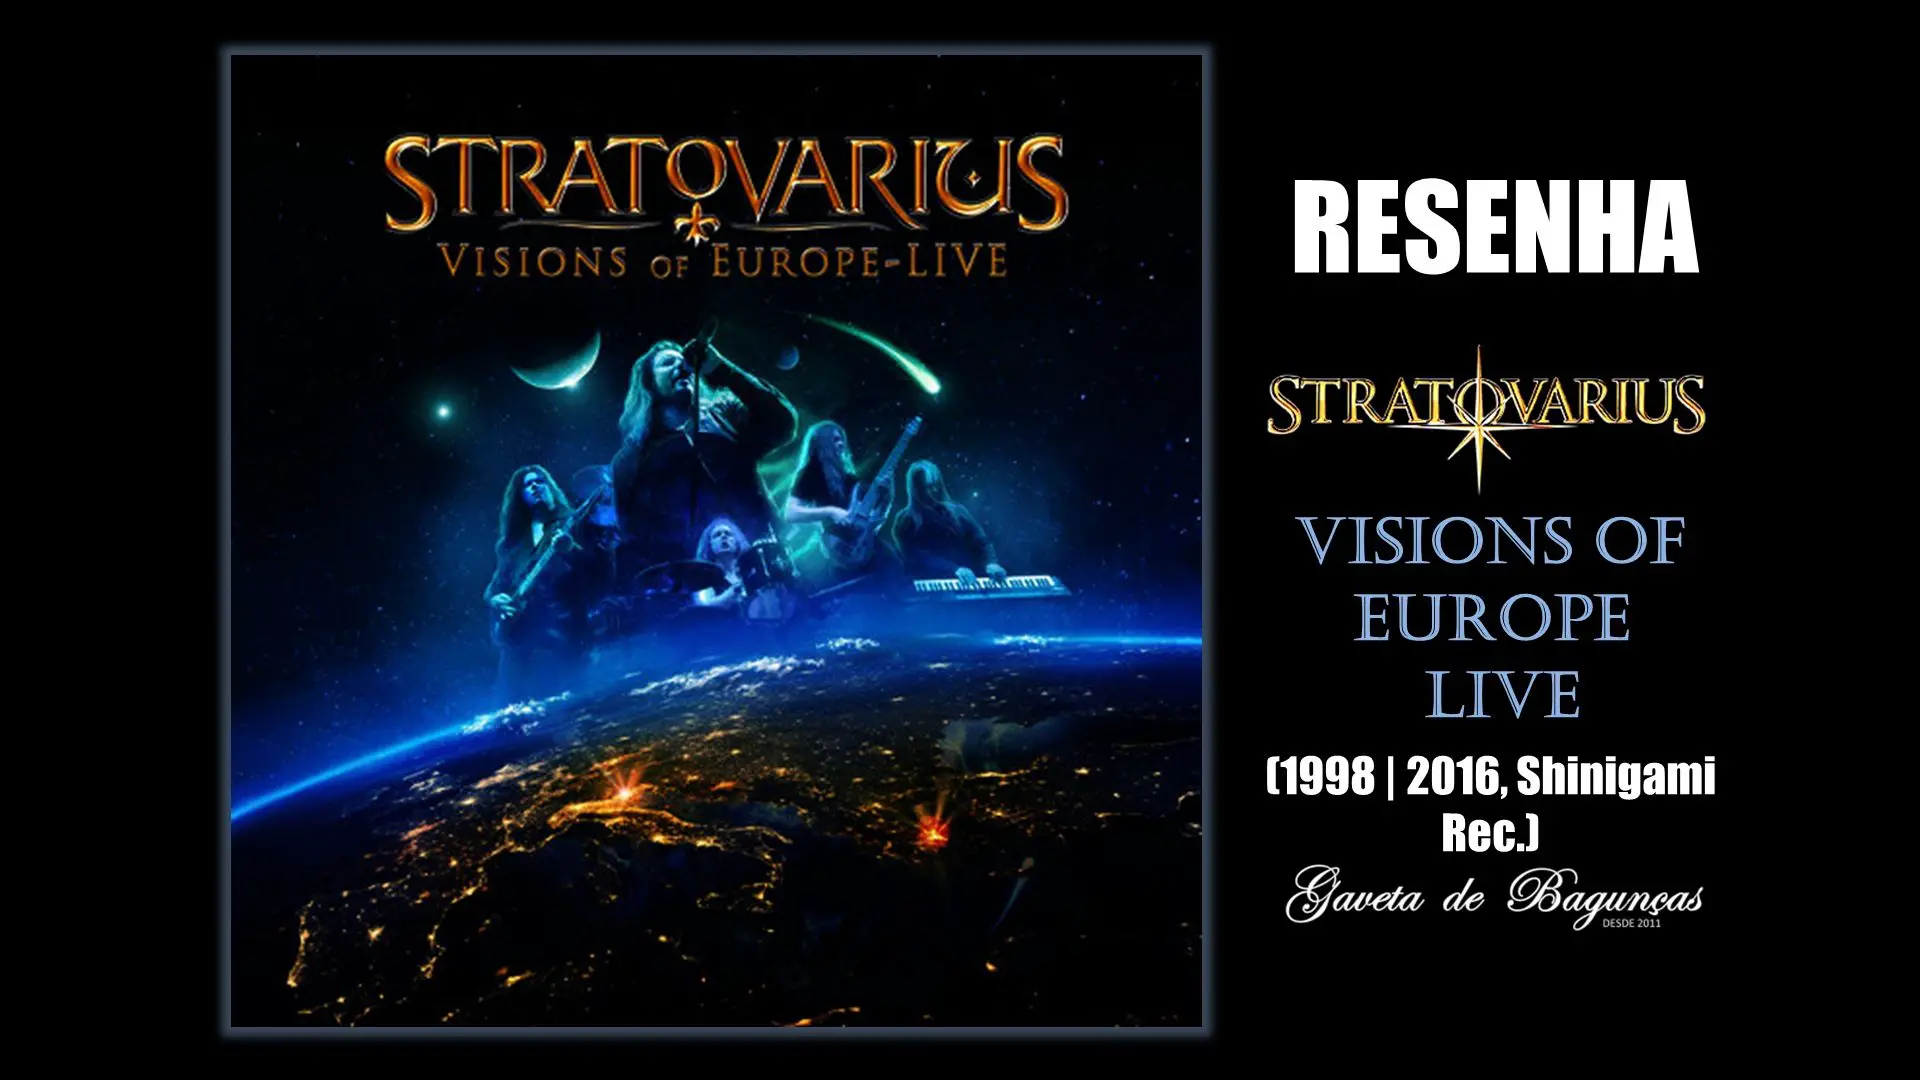 Stratovarius - Visions of Europe Live Resenha review relançamento reissue